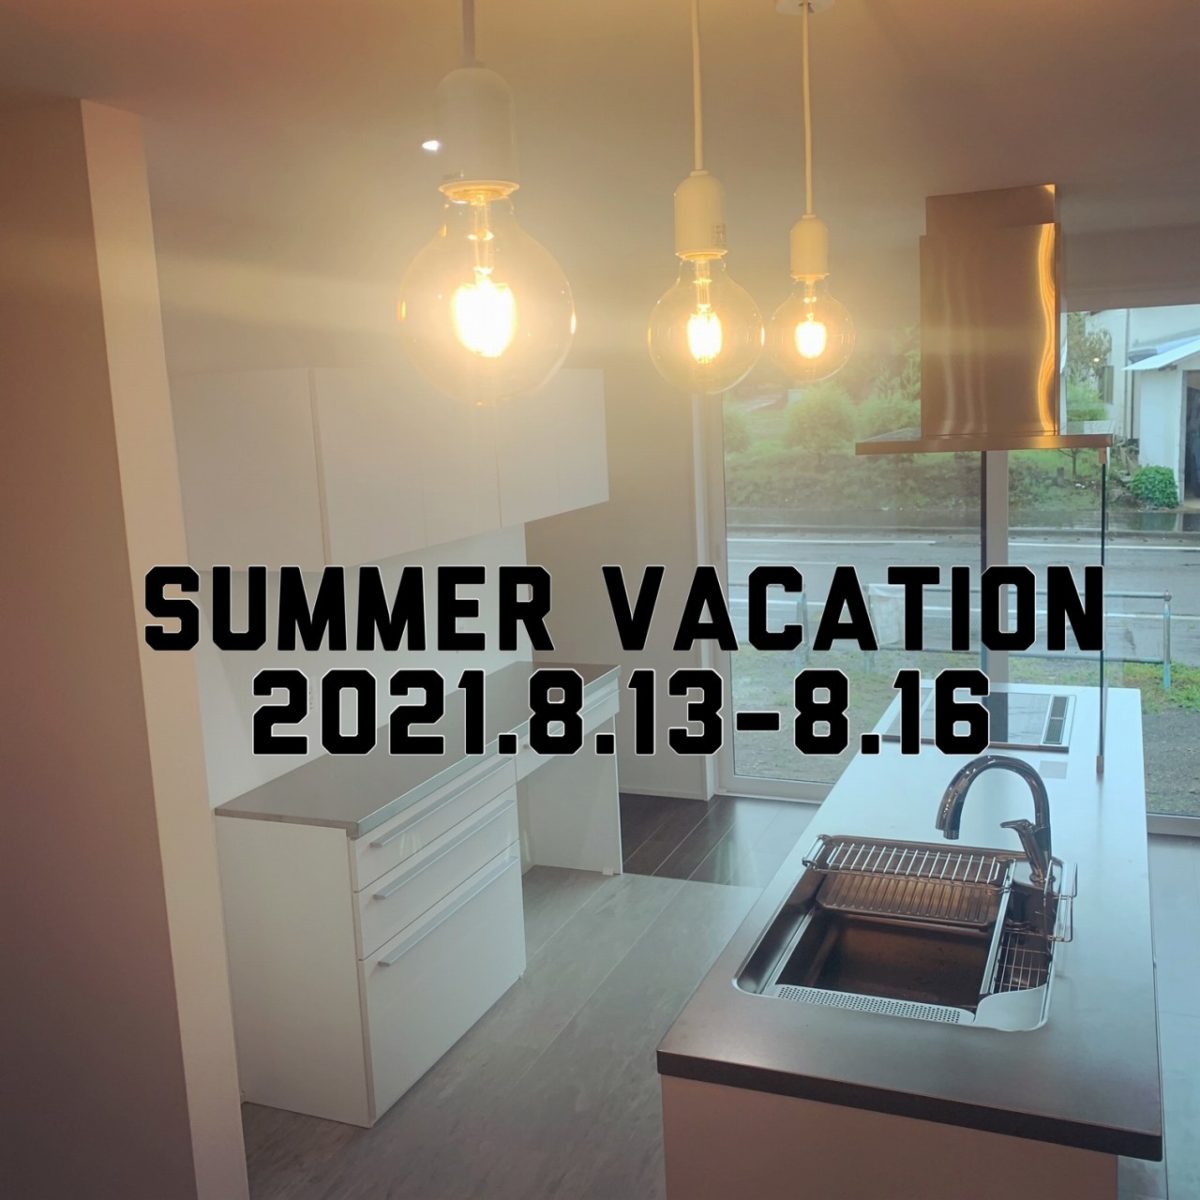 【Summer Vacation】夏季休暇のお知らせ【2021.8.13-16】